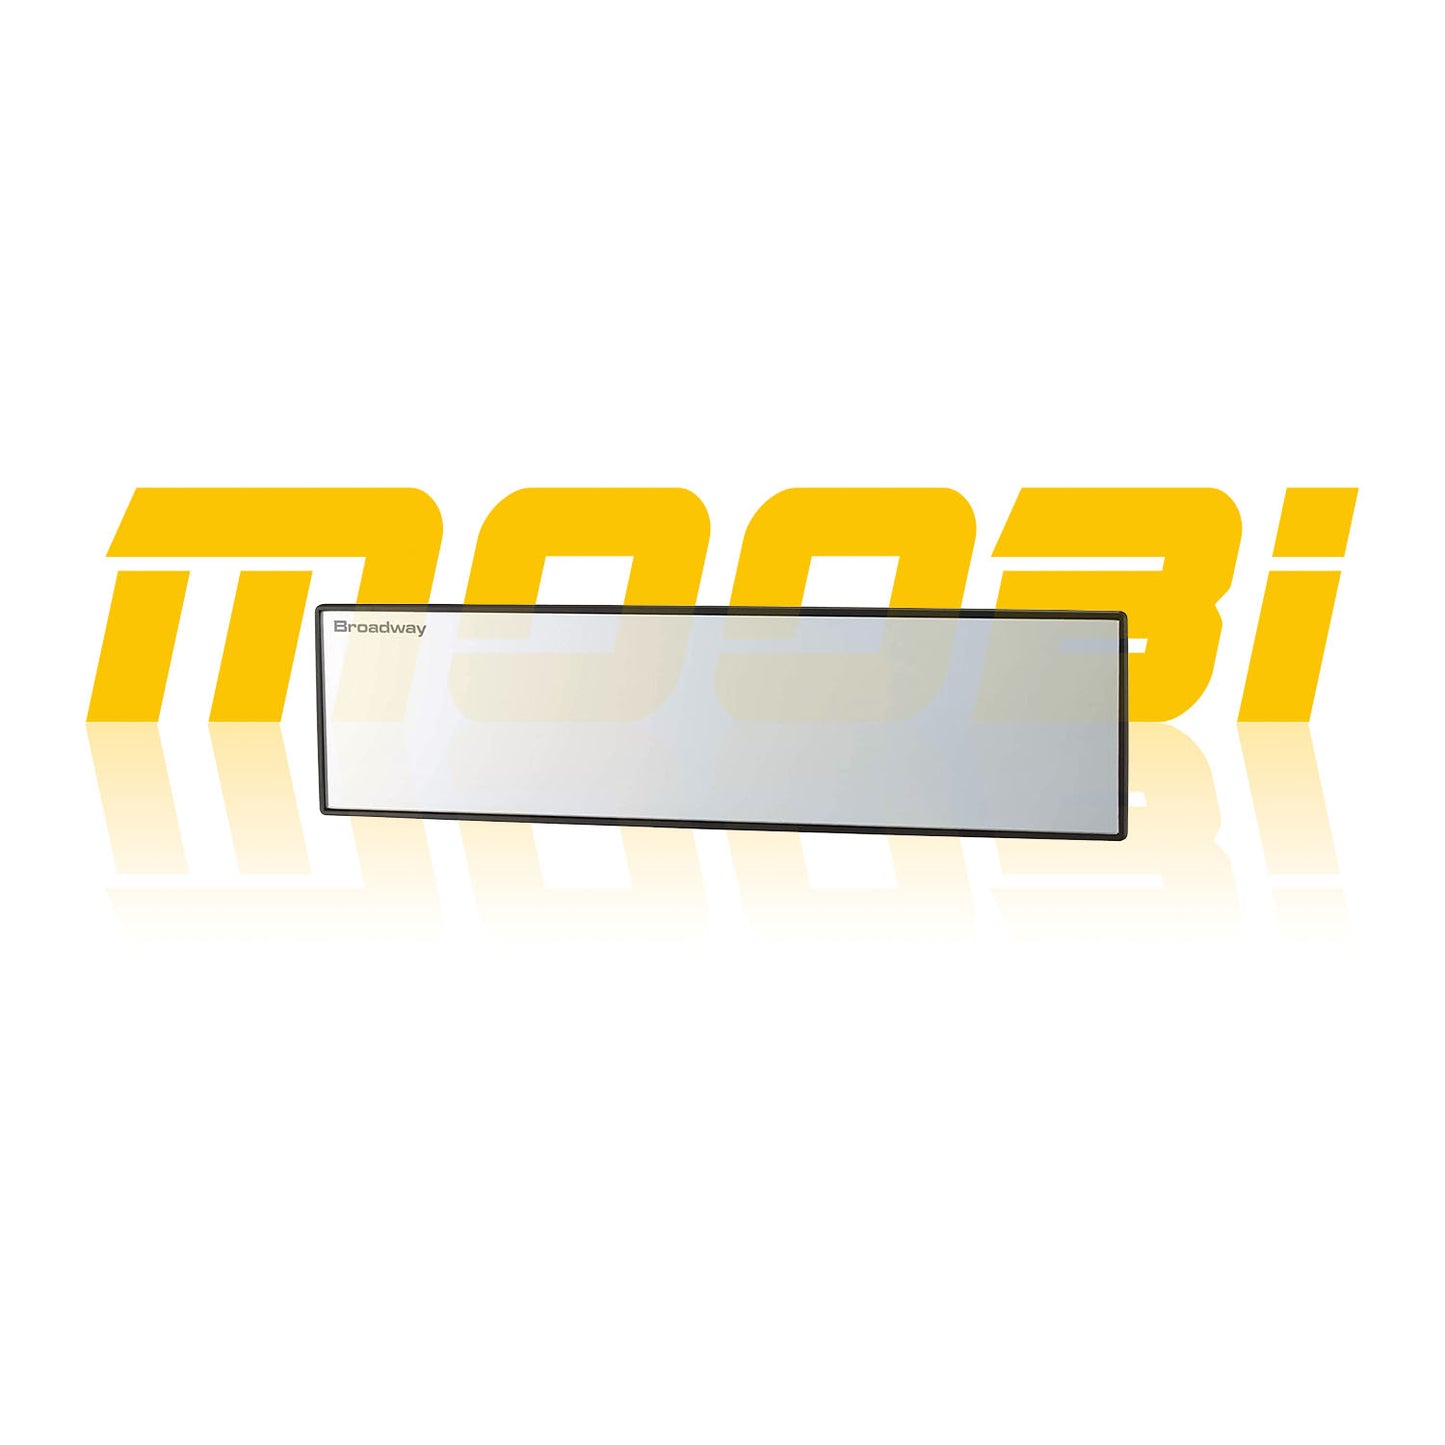 日本 NAPOLEX | BROADWAY 300mm 光反射Aluminum Plating鋁鏡倒後鏡 | MOOBI 香港網上汽車用品店 p1